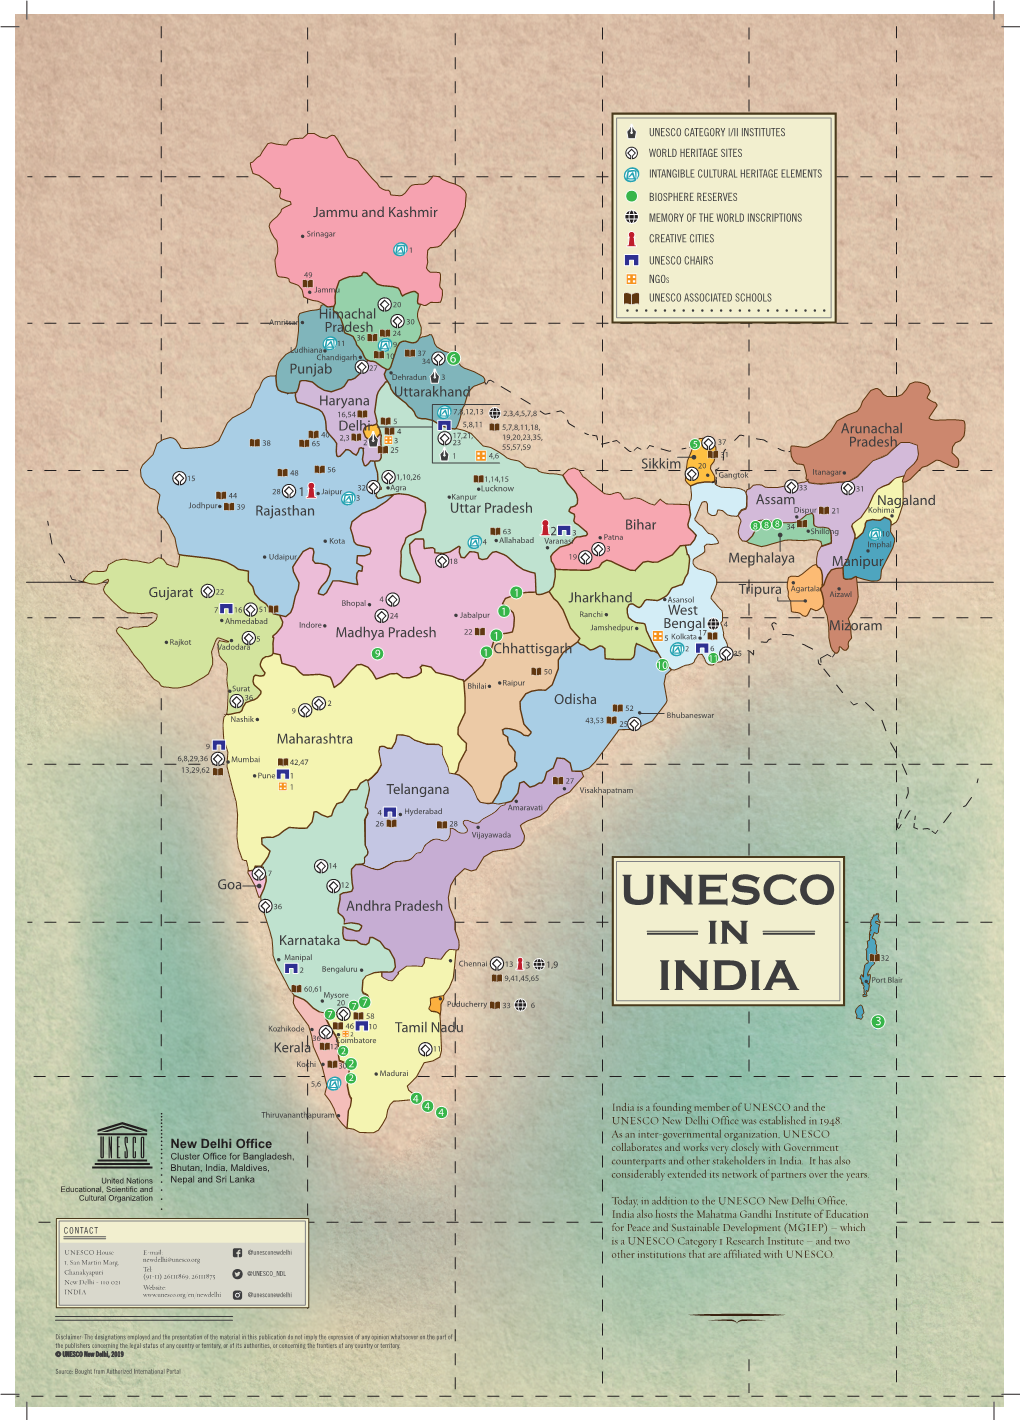 UNESCO in India